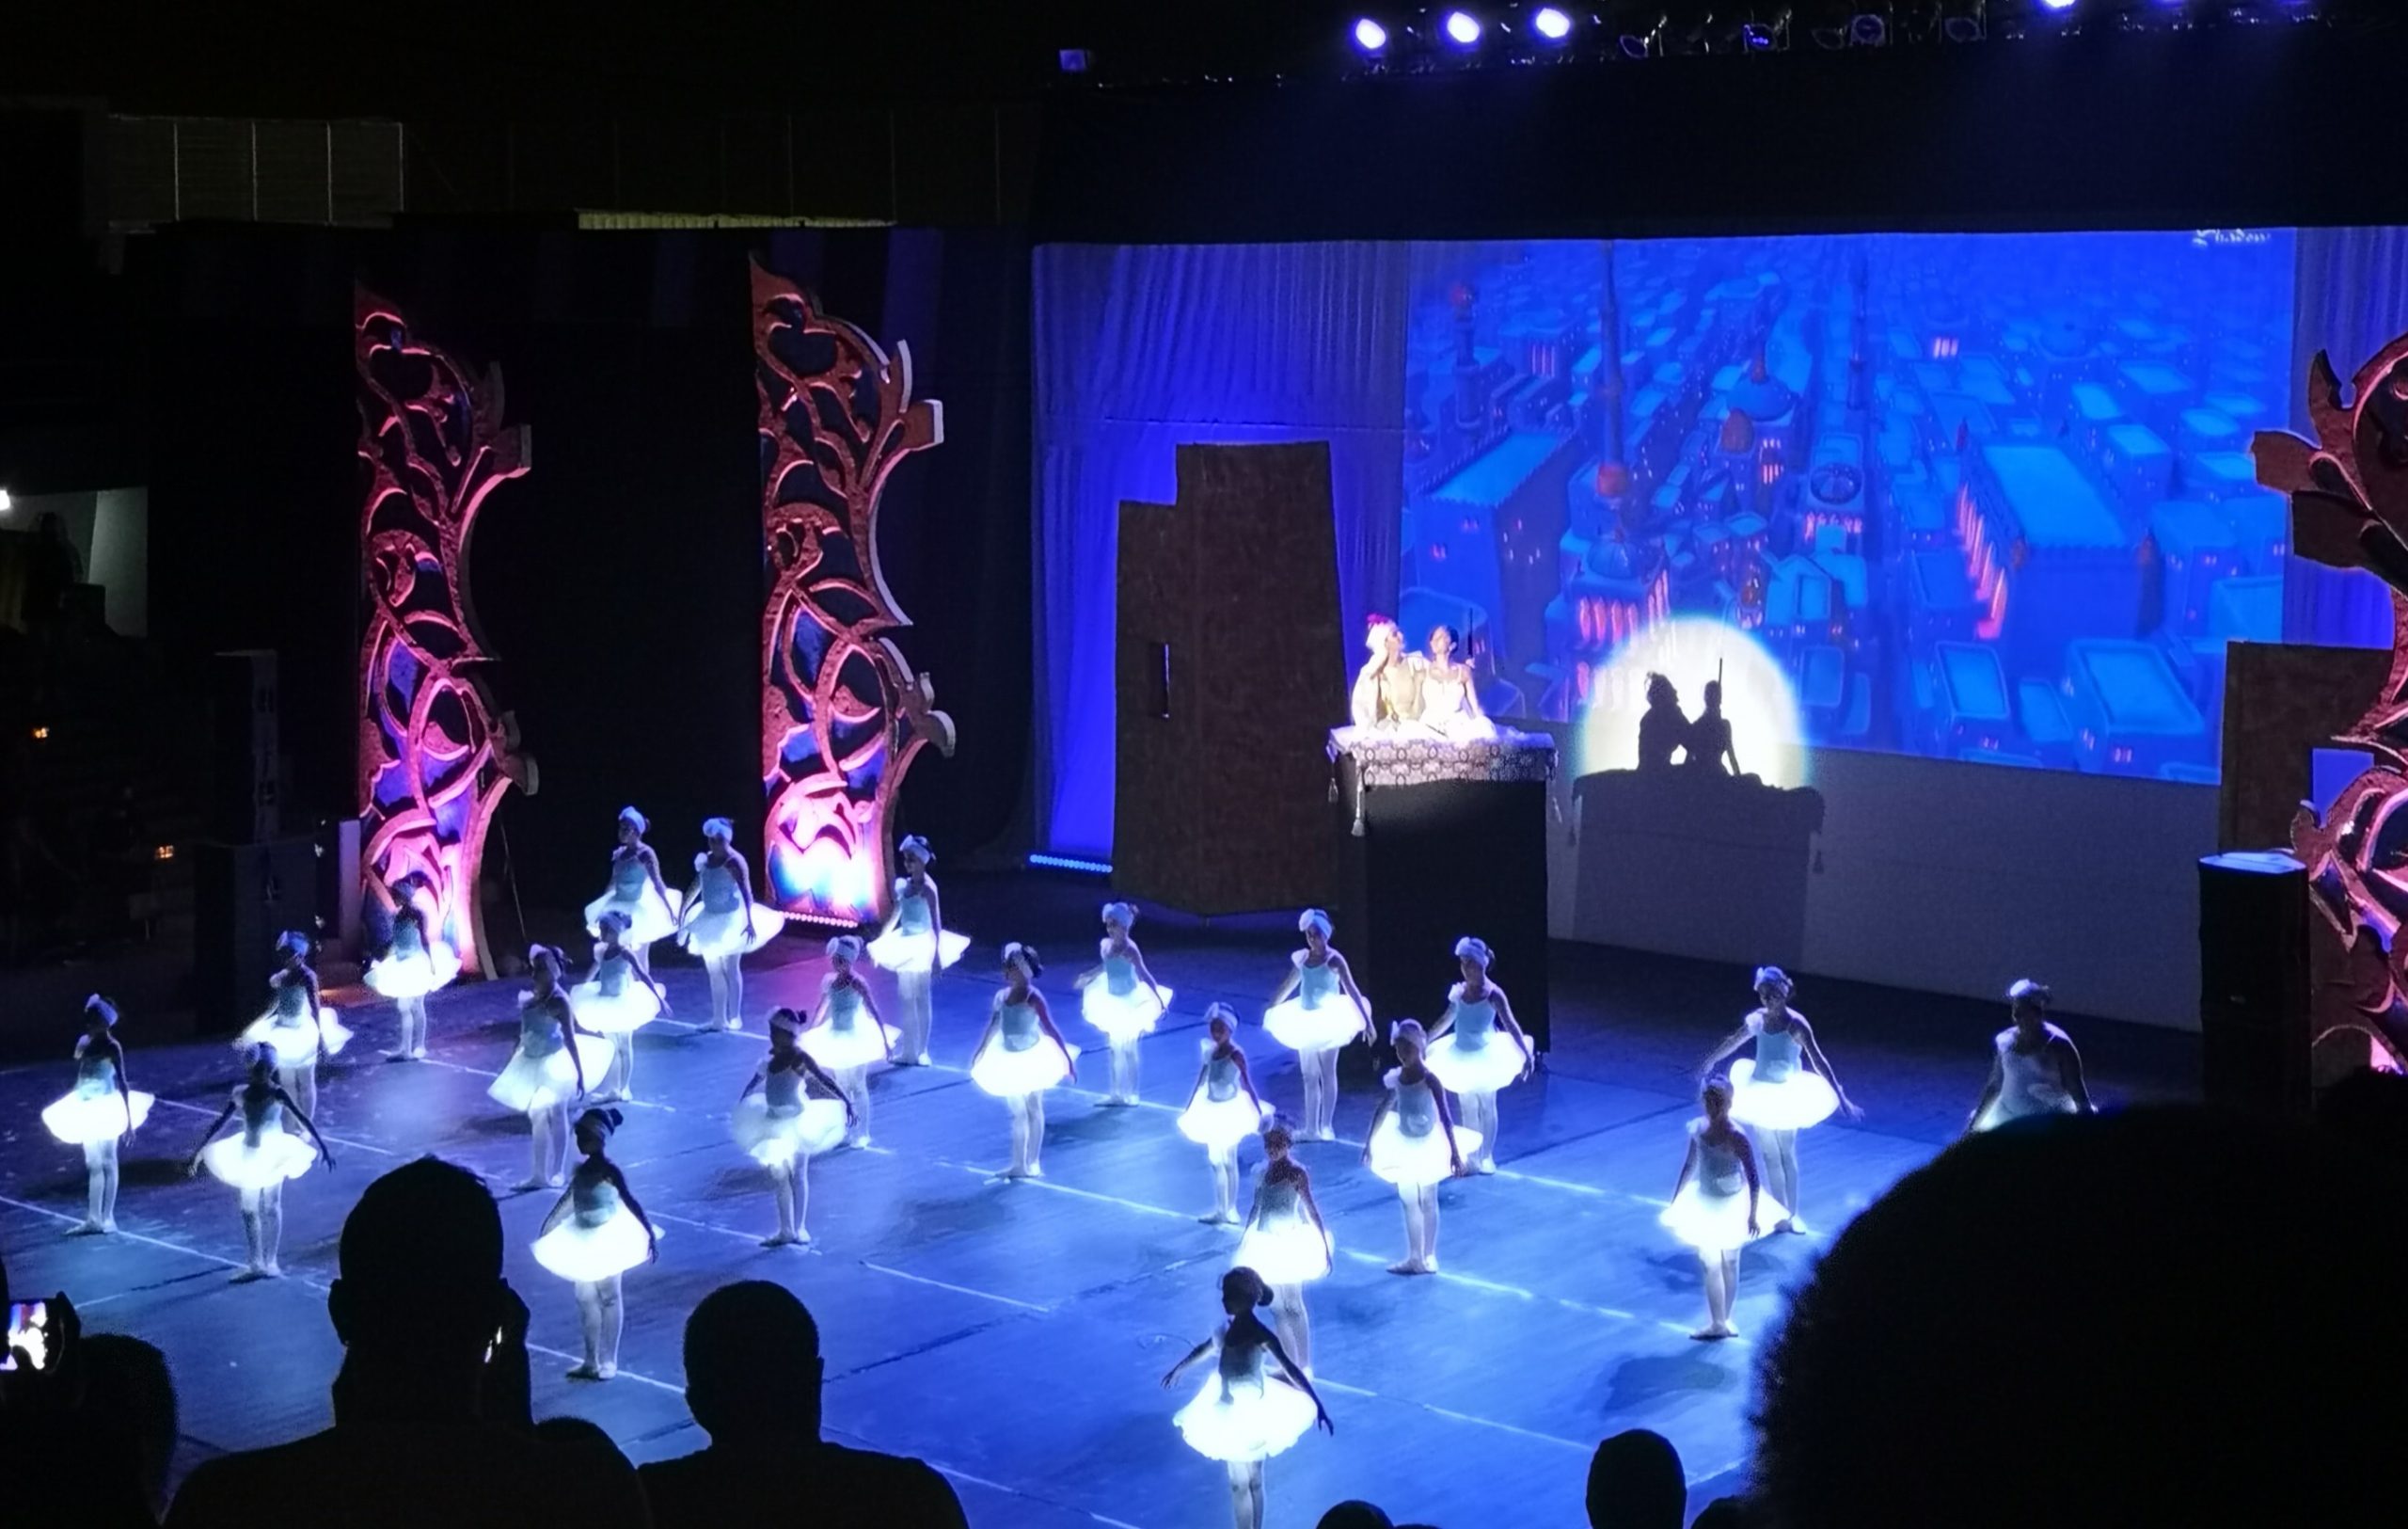 Τις καλύτερες εντυπώσεις άφησε η χθεσινή παράσταση “Aladdin” από την Σχολή Μπαλέτου Σύλβιας Τερζή